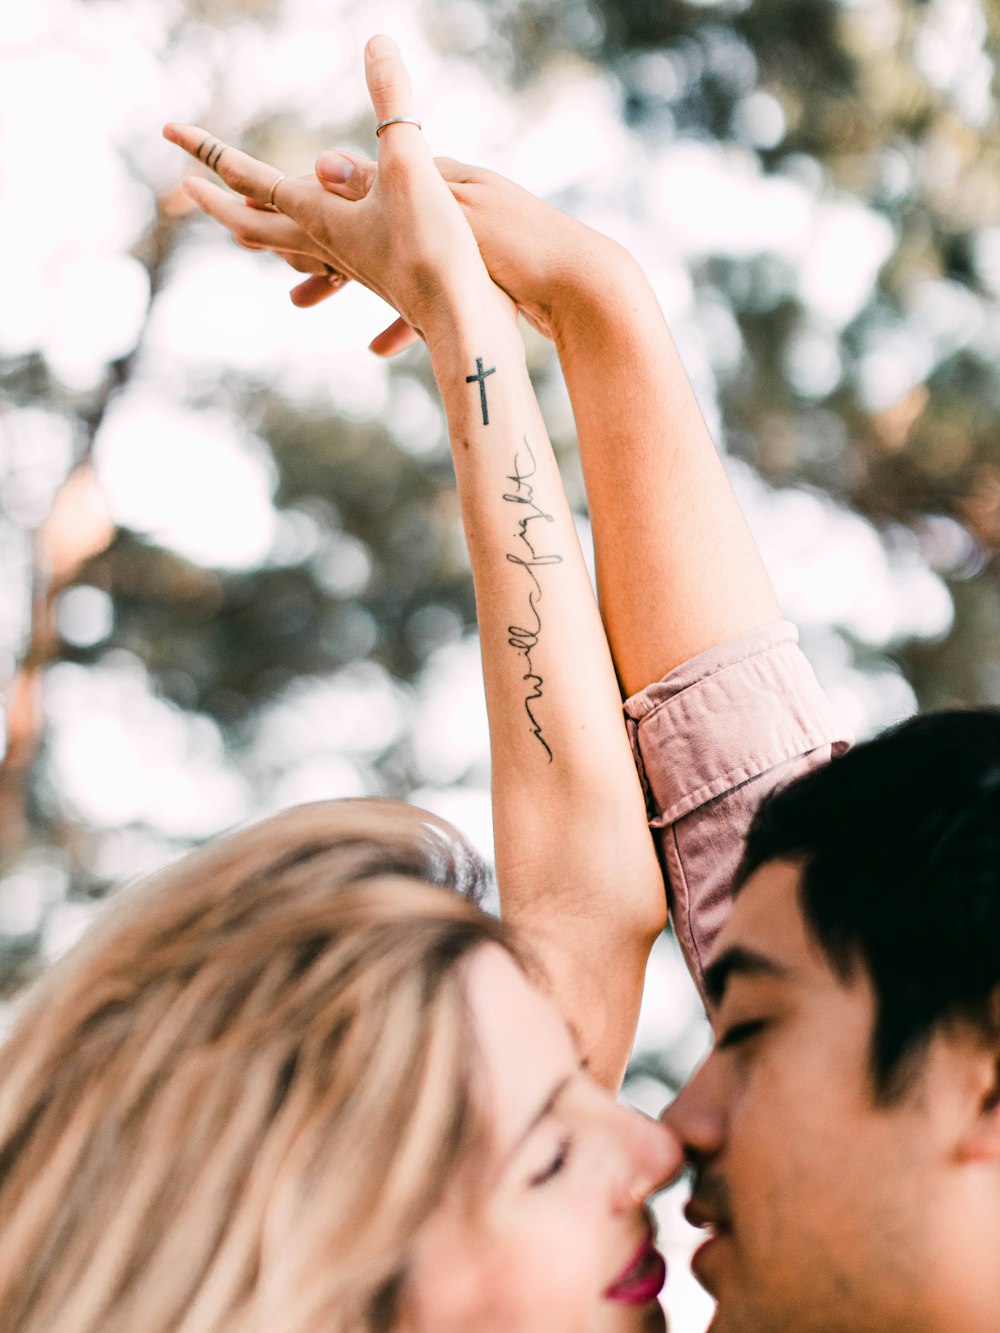 Femme en chemise noire avec tatouage sur son bras gauche